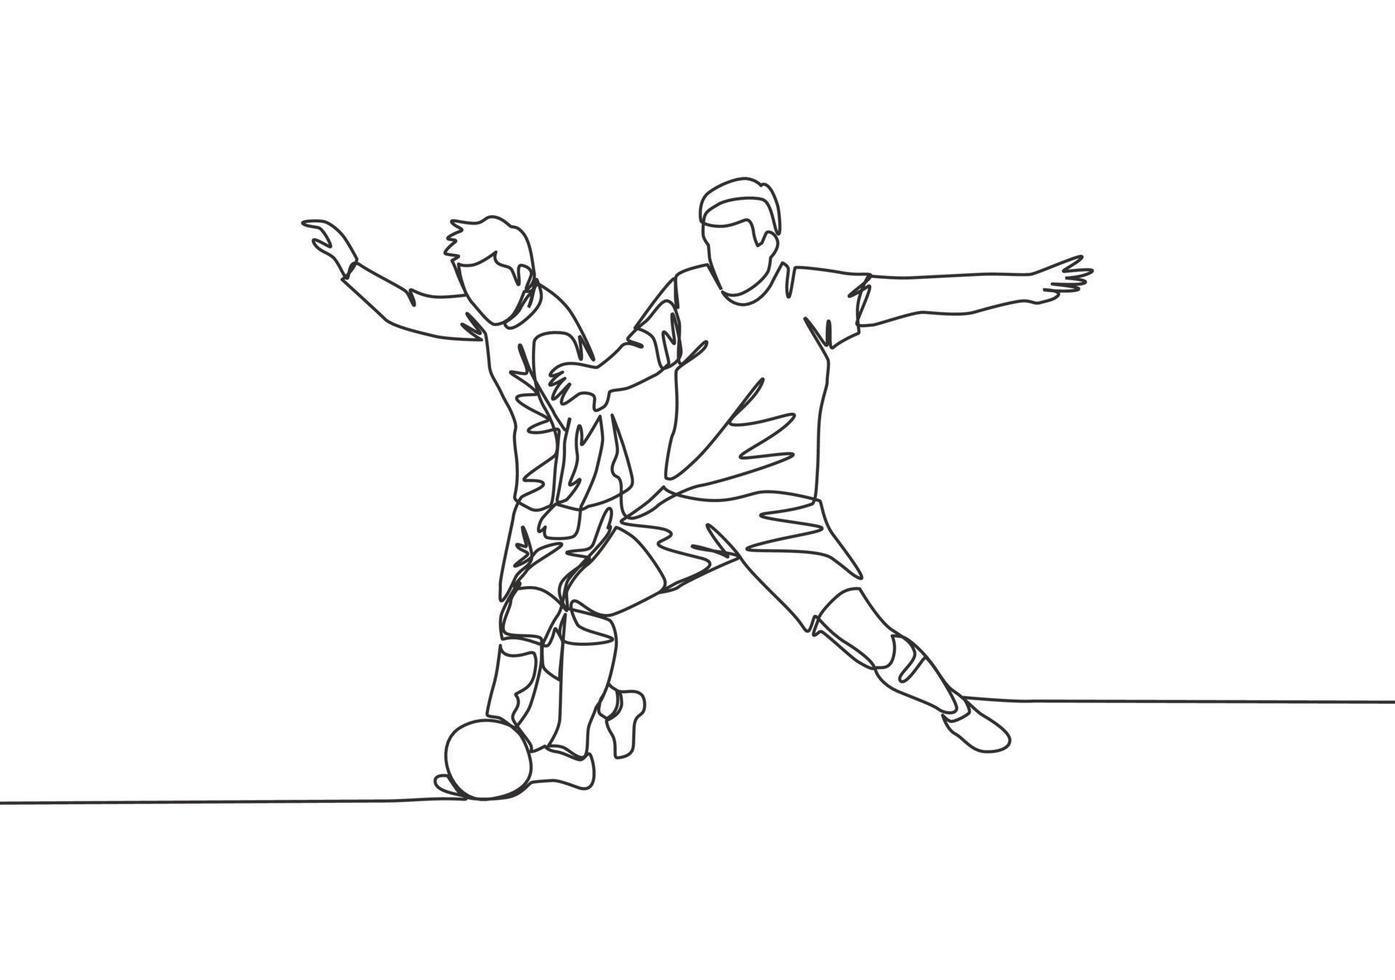 single doorlopend lijn tekening van jong energiek Amerikaans voetbal speler vechten voor de bal Bij de wedstrijd spel. voetbal bij elkaar passen sport- concept. een lijn trek ontwerp vector illustratie